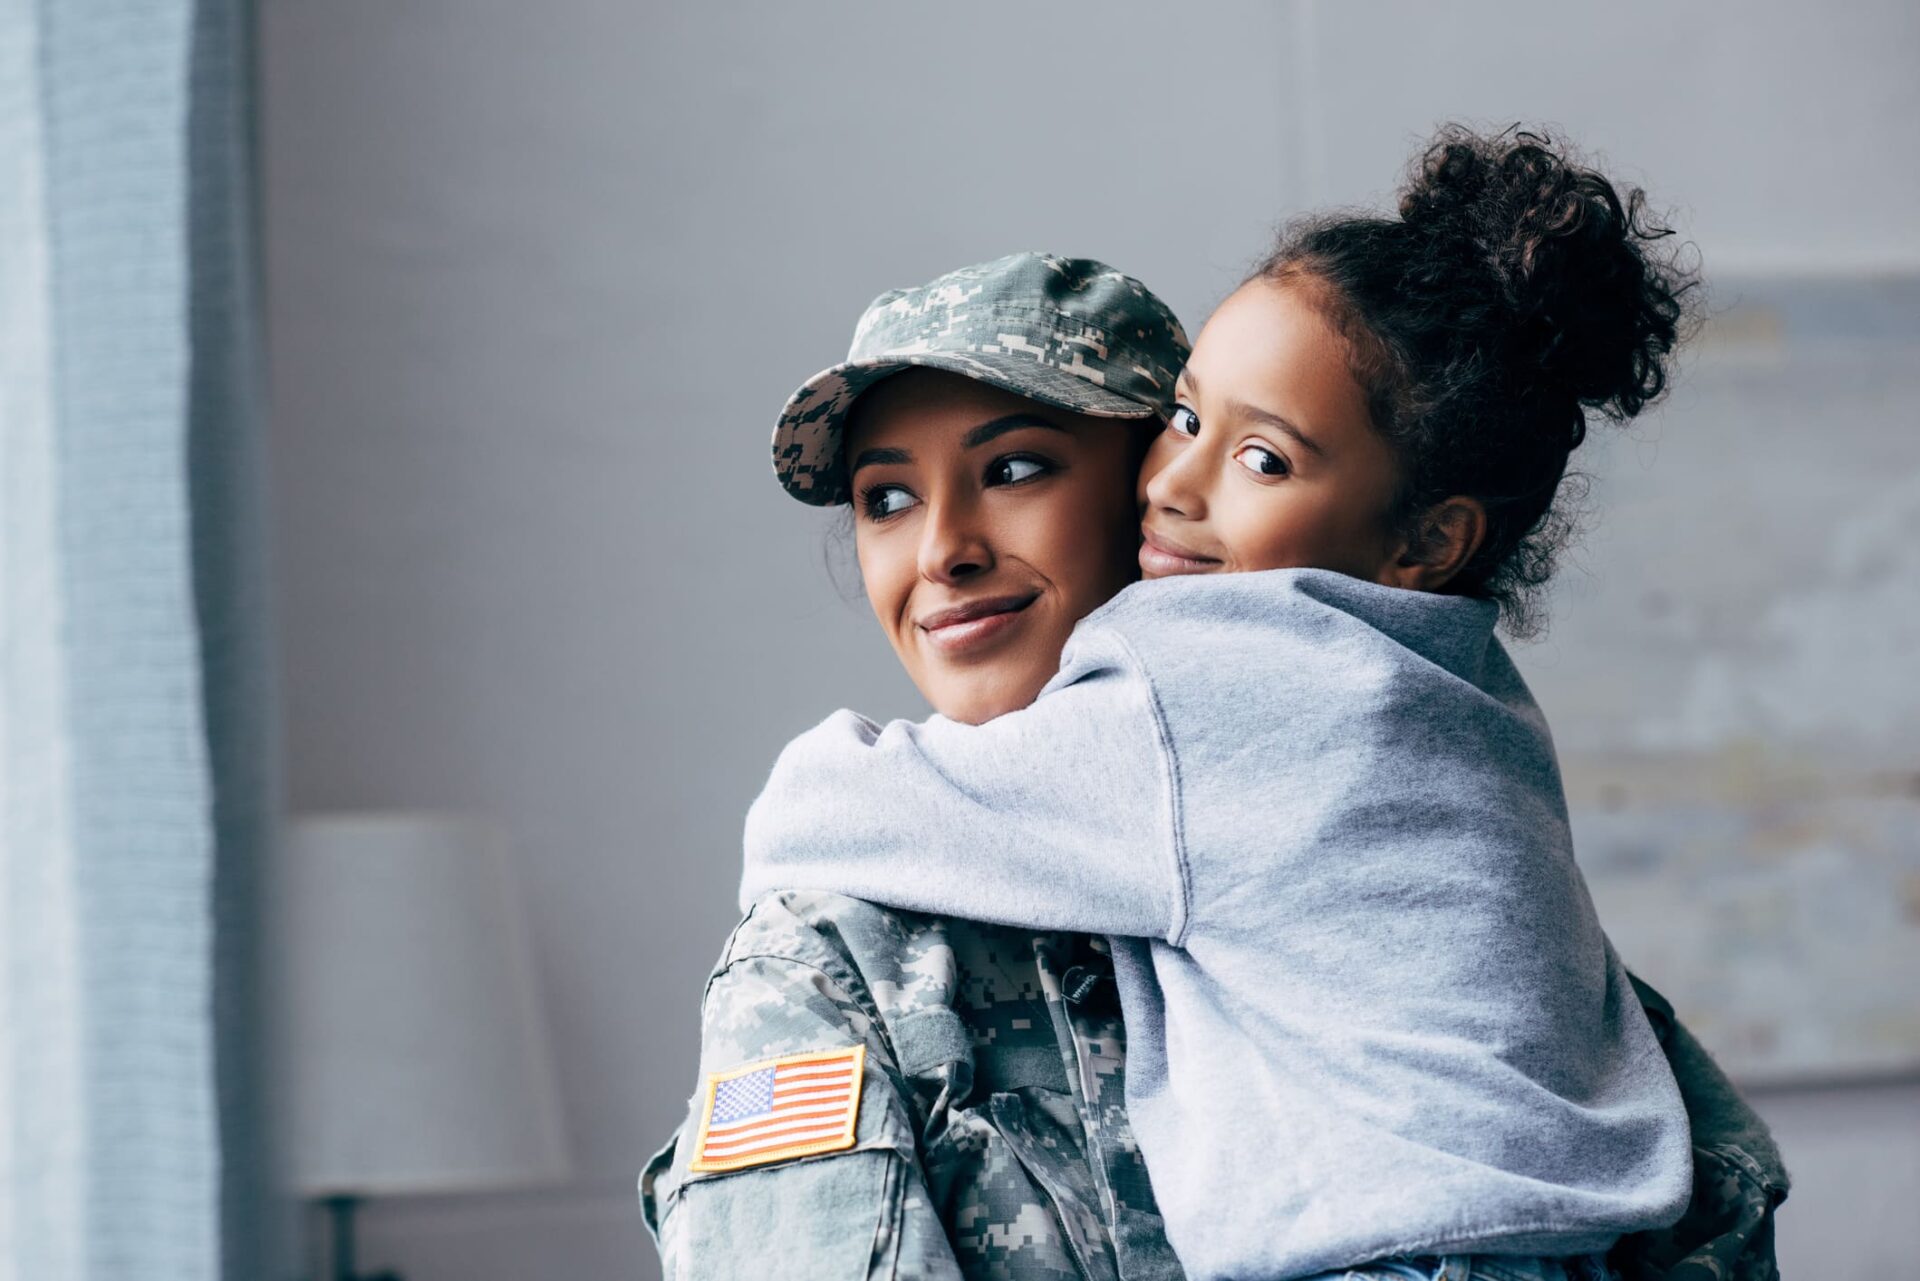 Women waring a military uniform hugging a girl